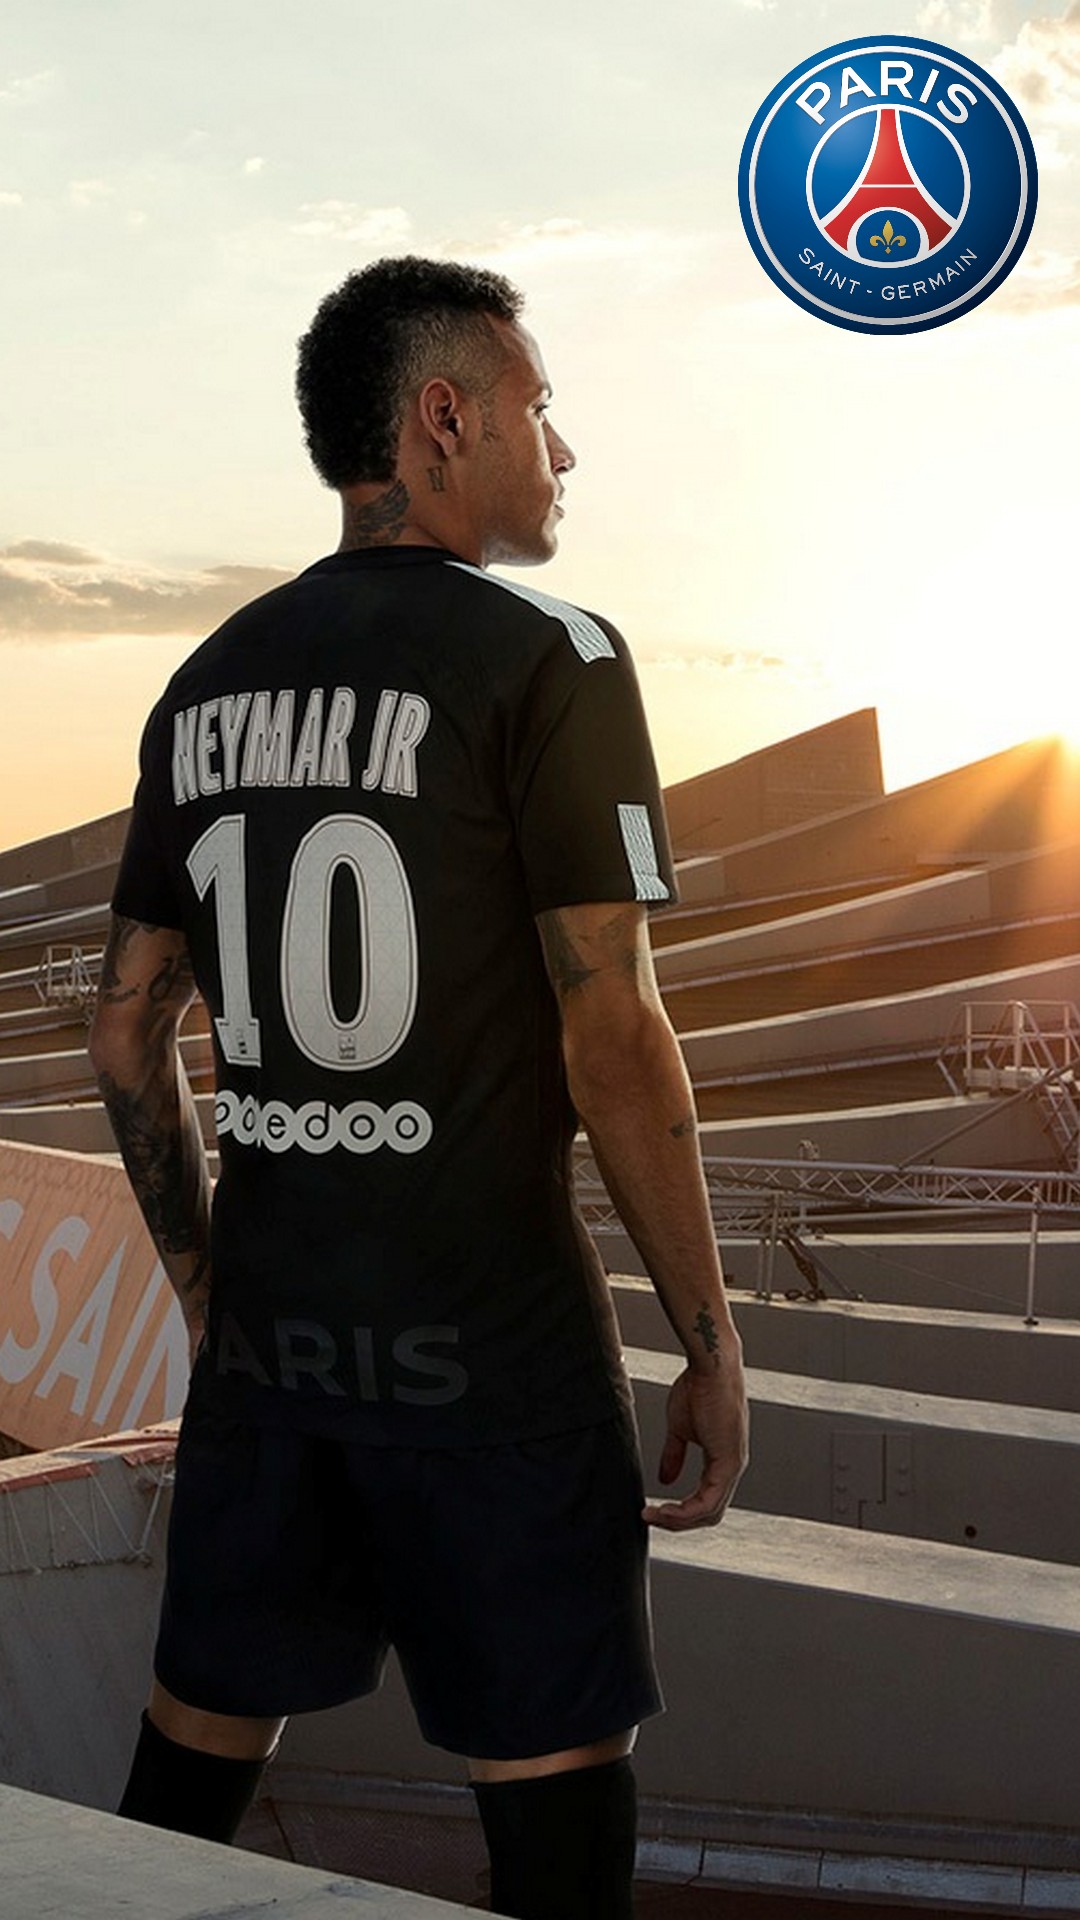 neymar wallpaper iphone,jersey,sportbekleidung,t shirt,spieler,mannschaft